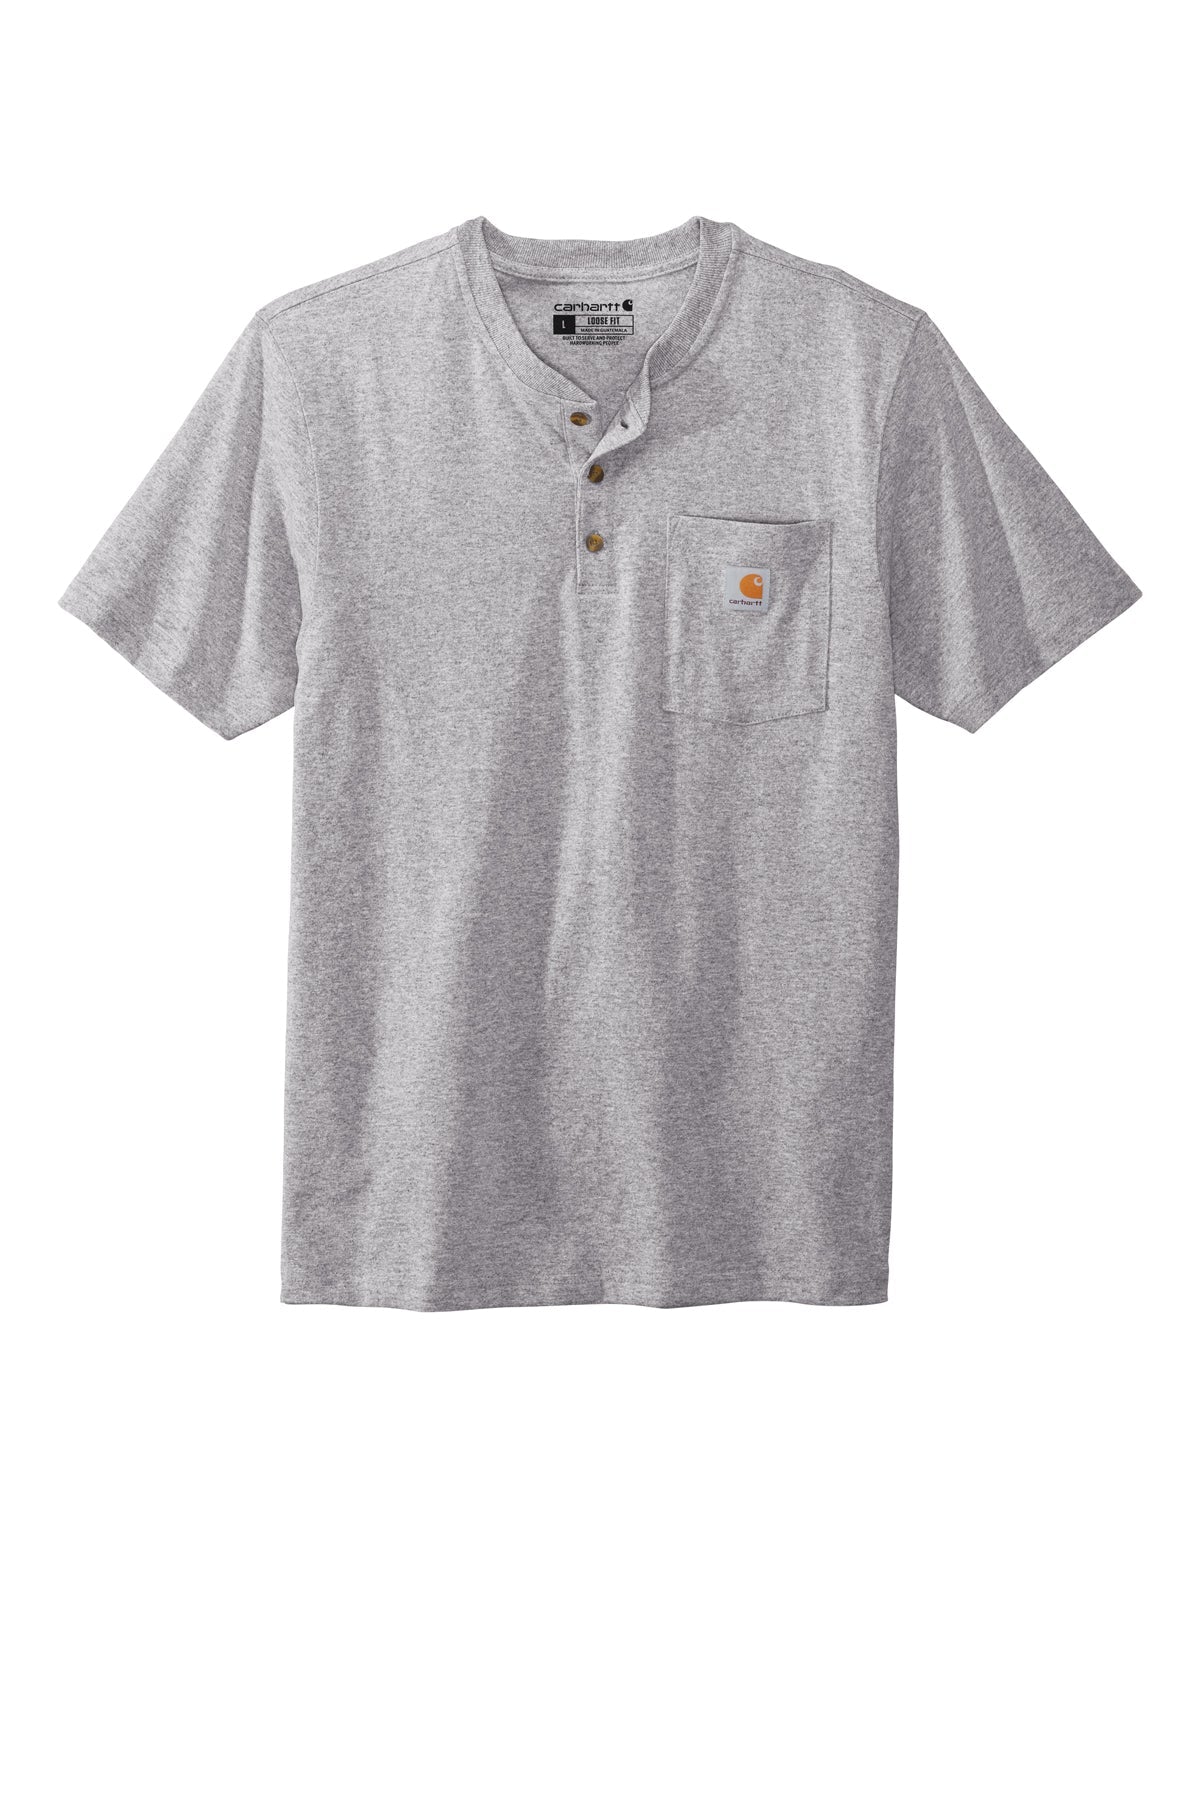 Carhartt® - Short Sleeve Henley T-Shirt - CTK84